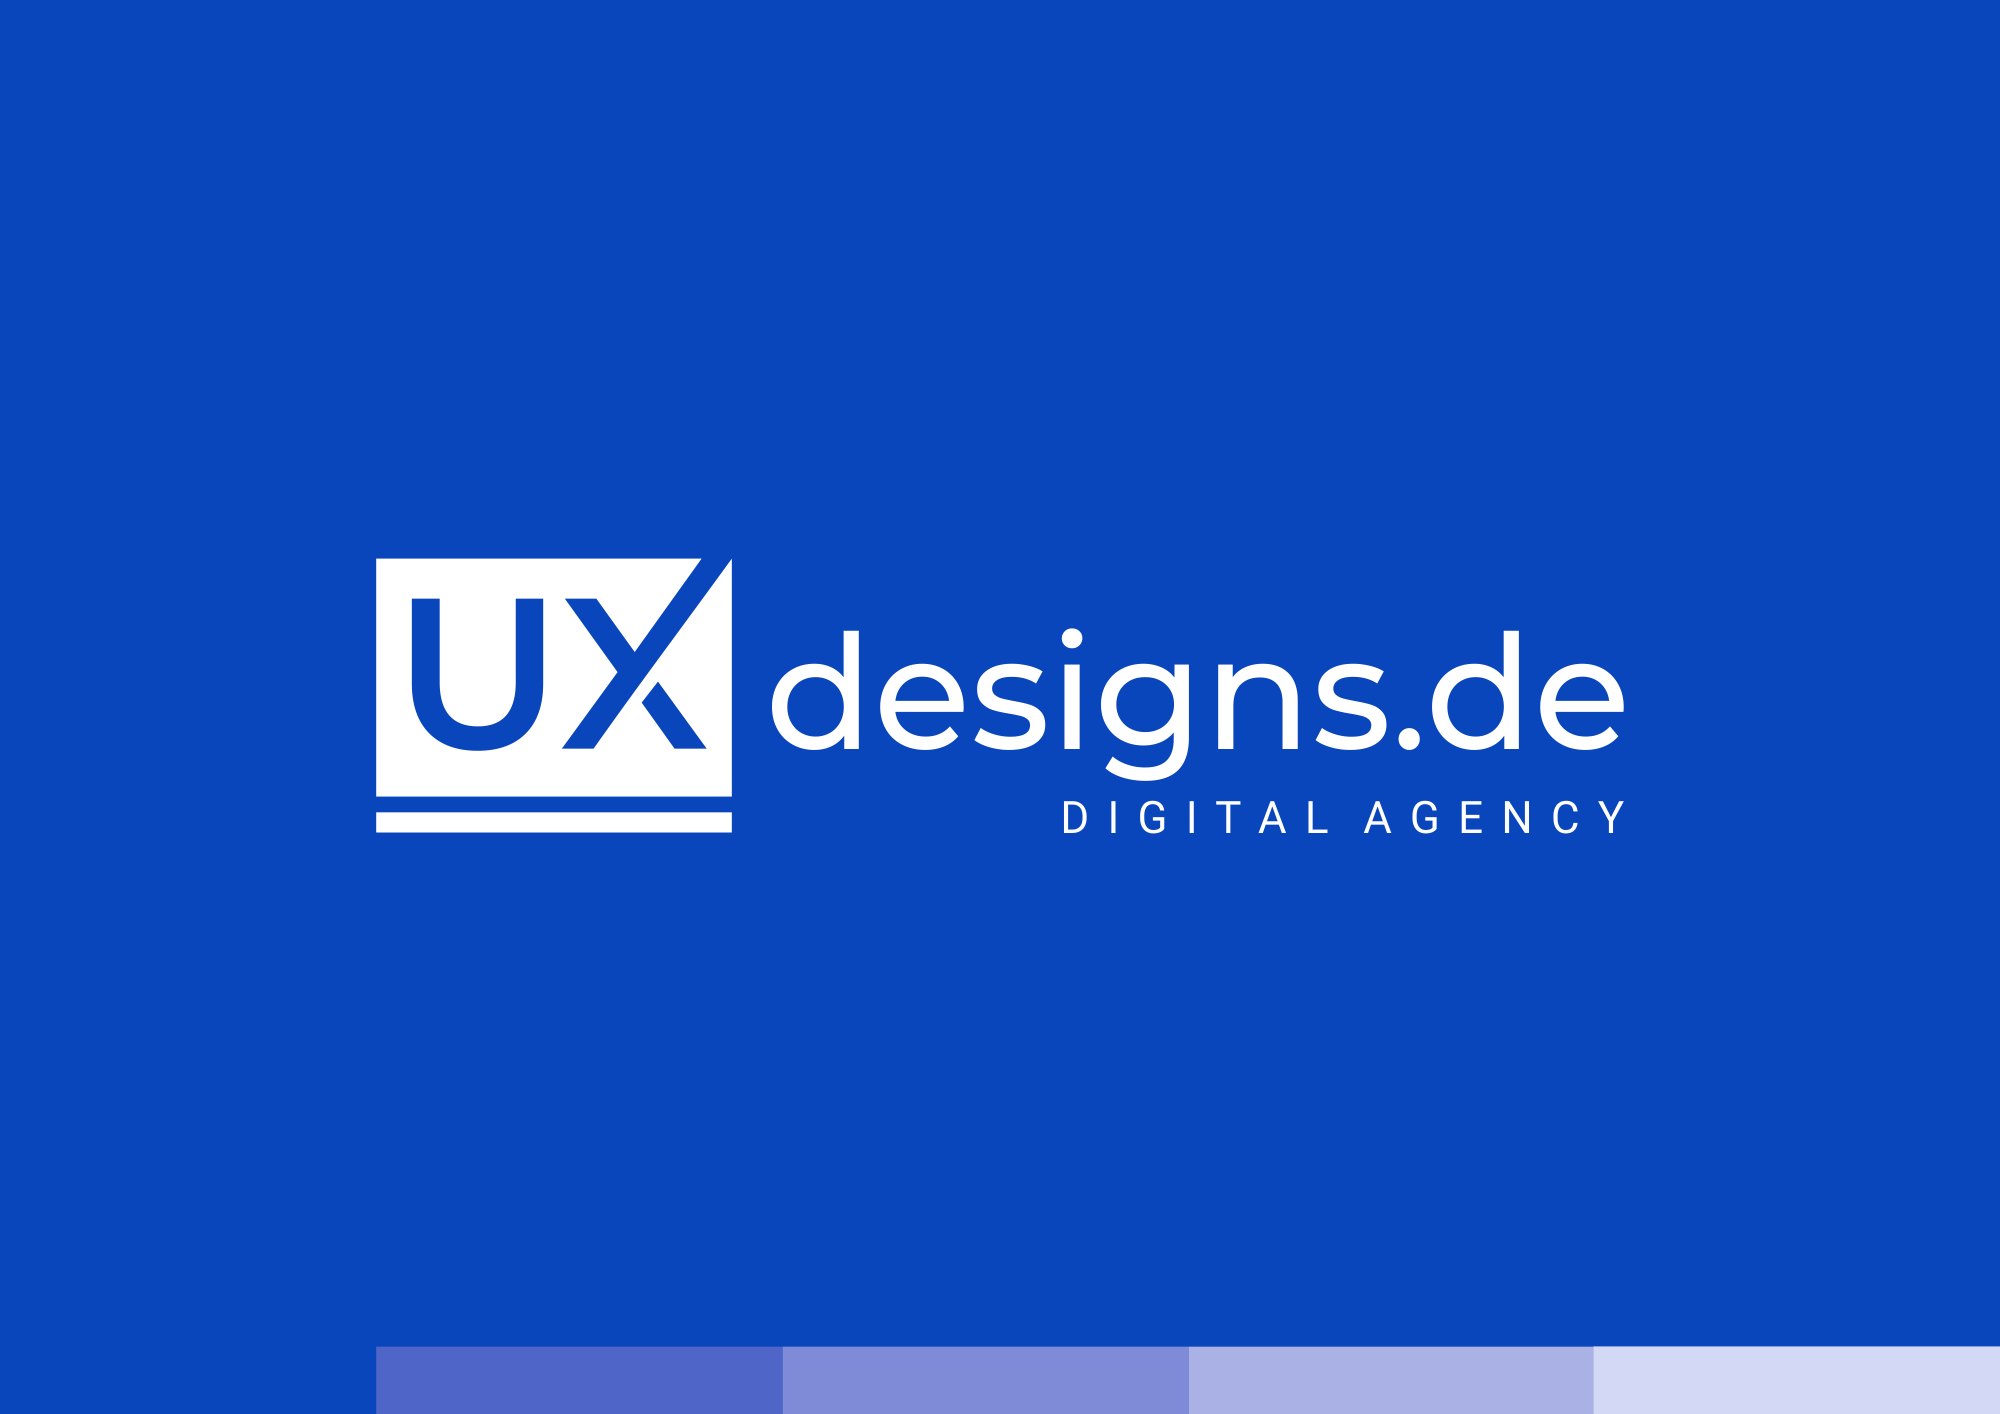 Corporate Design - uxdesigns.de - Logo Design auf blauen Hintergrund.